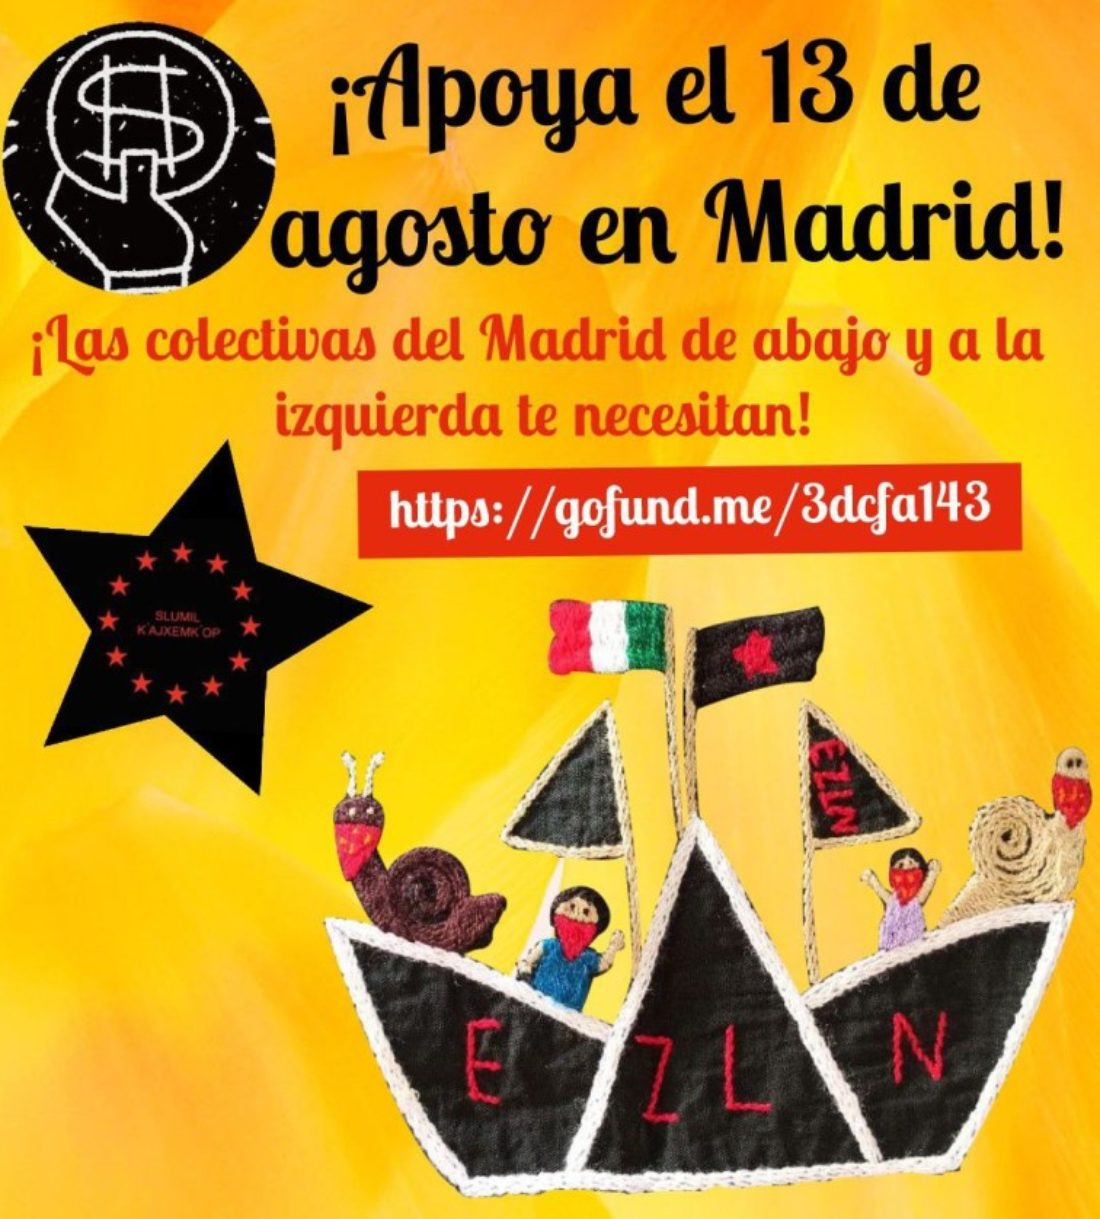 Crowdfunding en apoyo a la visita de las Zapatistas a Madrid el 13 de agosto